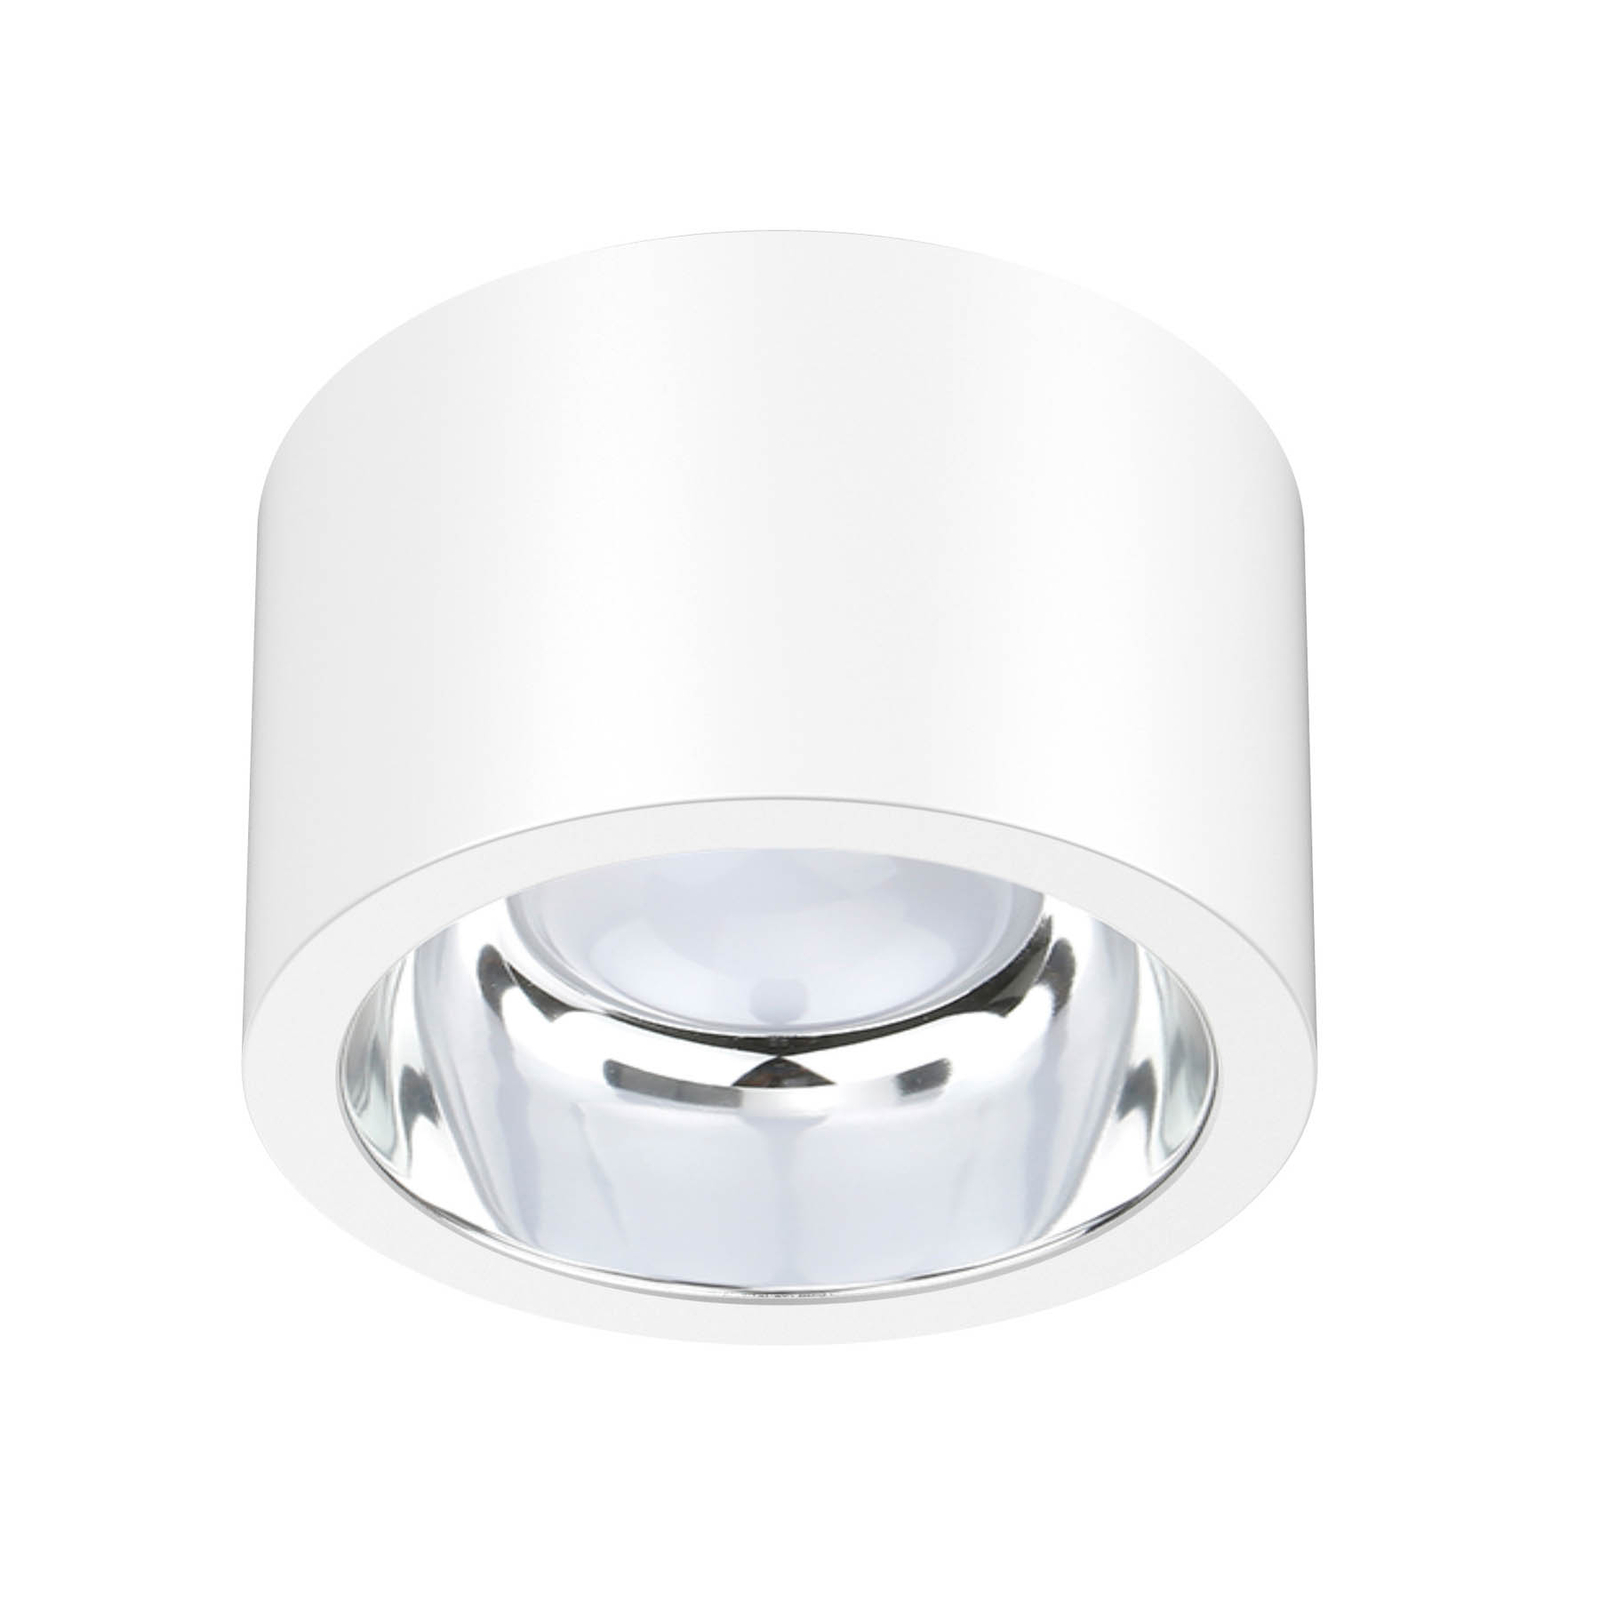 ALG54 LED ceiling spotlight, Ø 21.3 cm white